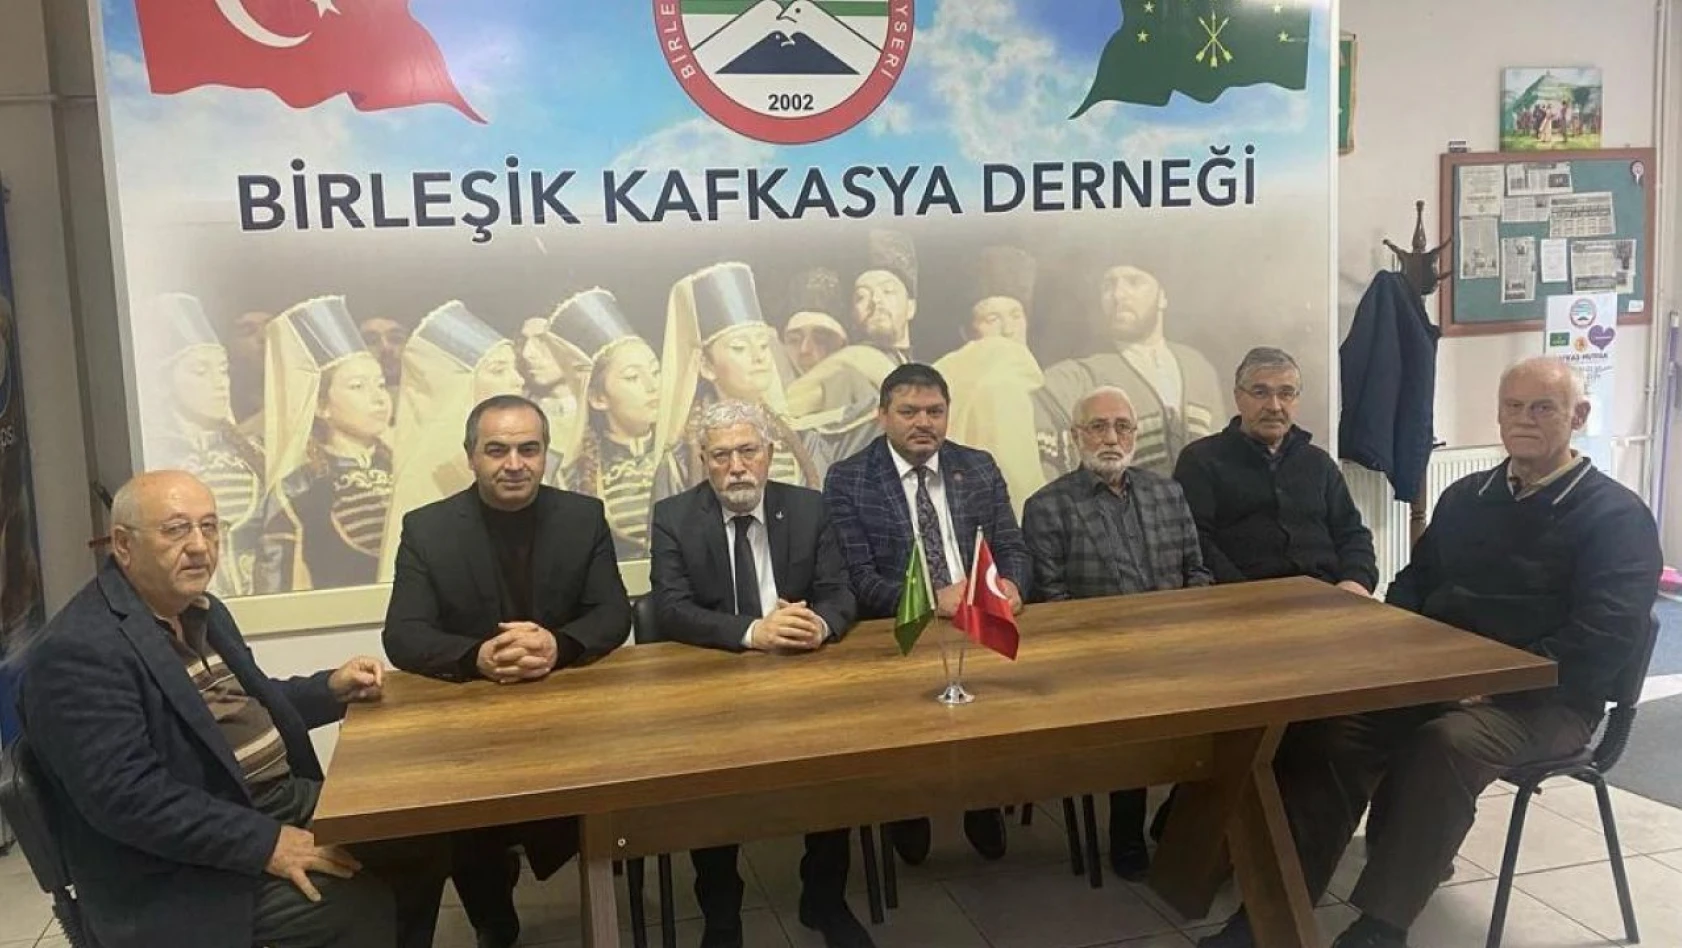 Yeniden Refah Partisi'nden Birleşik Kafkasya Derneği'ne ziyaret